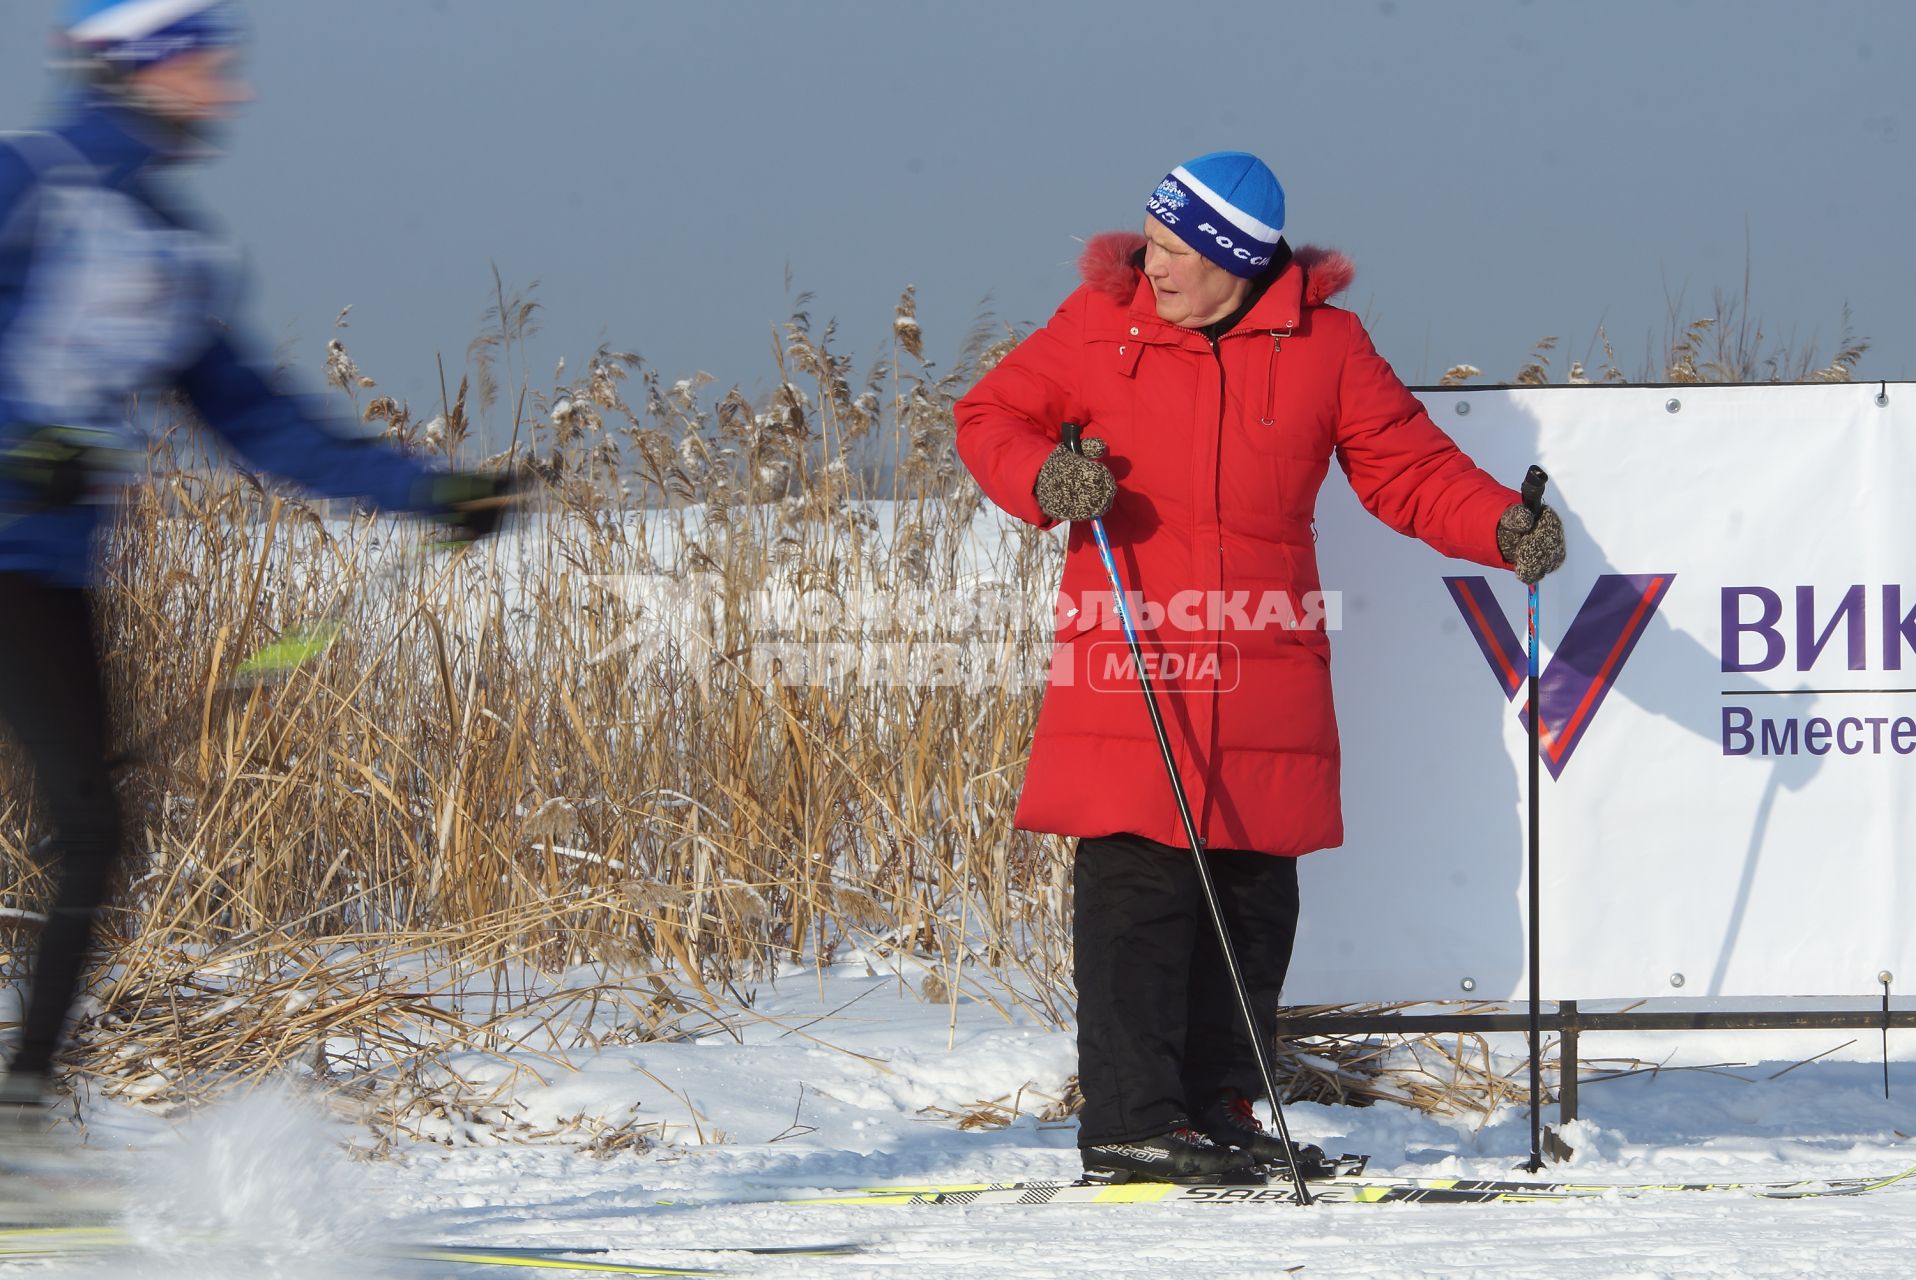 Участники всероссийской лыжной гонки \"Лыжня России 2015\" во время мужского забега спортсменов. Екатеринбург